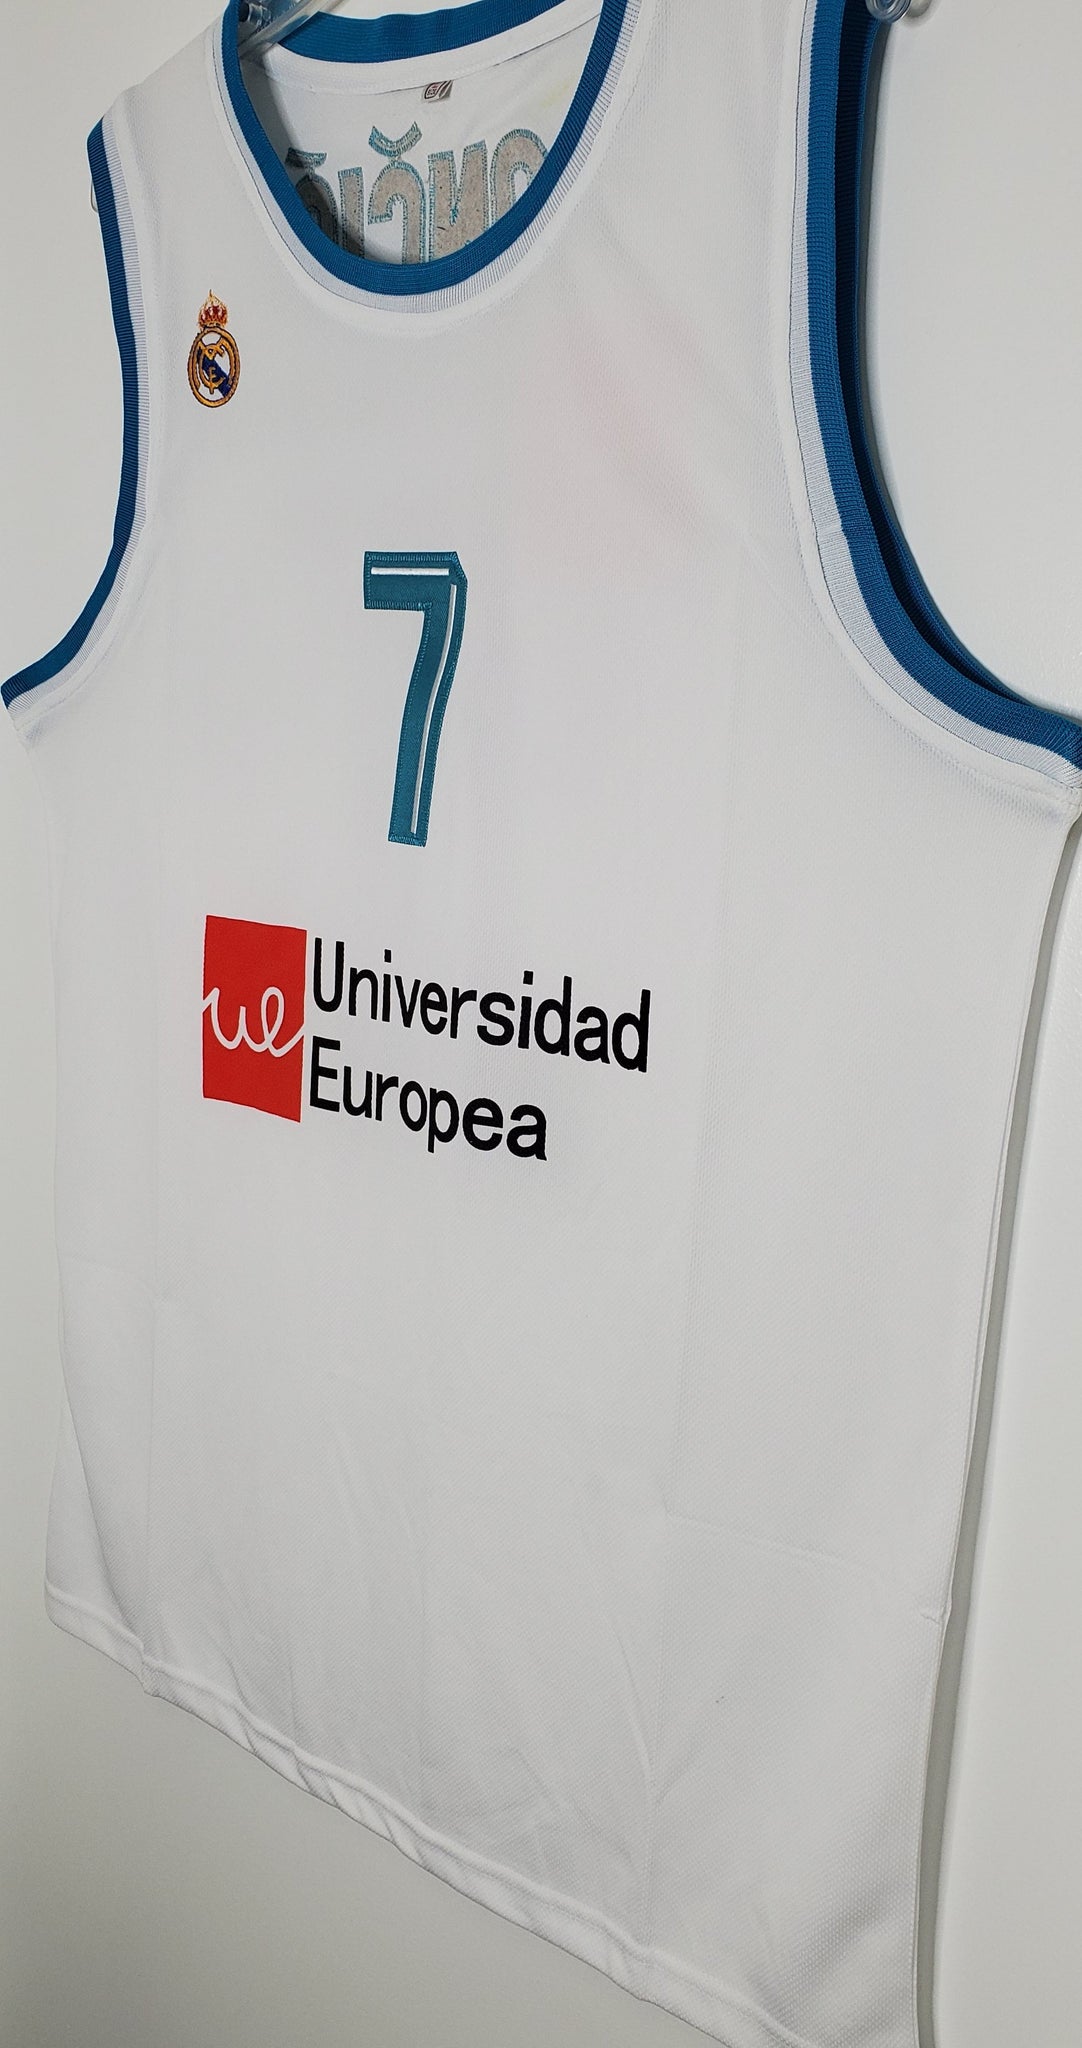 Luka Doncic Real Madrid EuroLeague Basketball Jersey (Blue) Custom Thr –  JordansSecretStuff